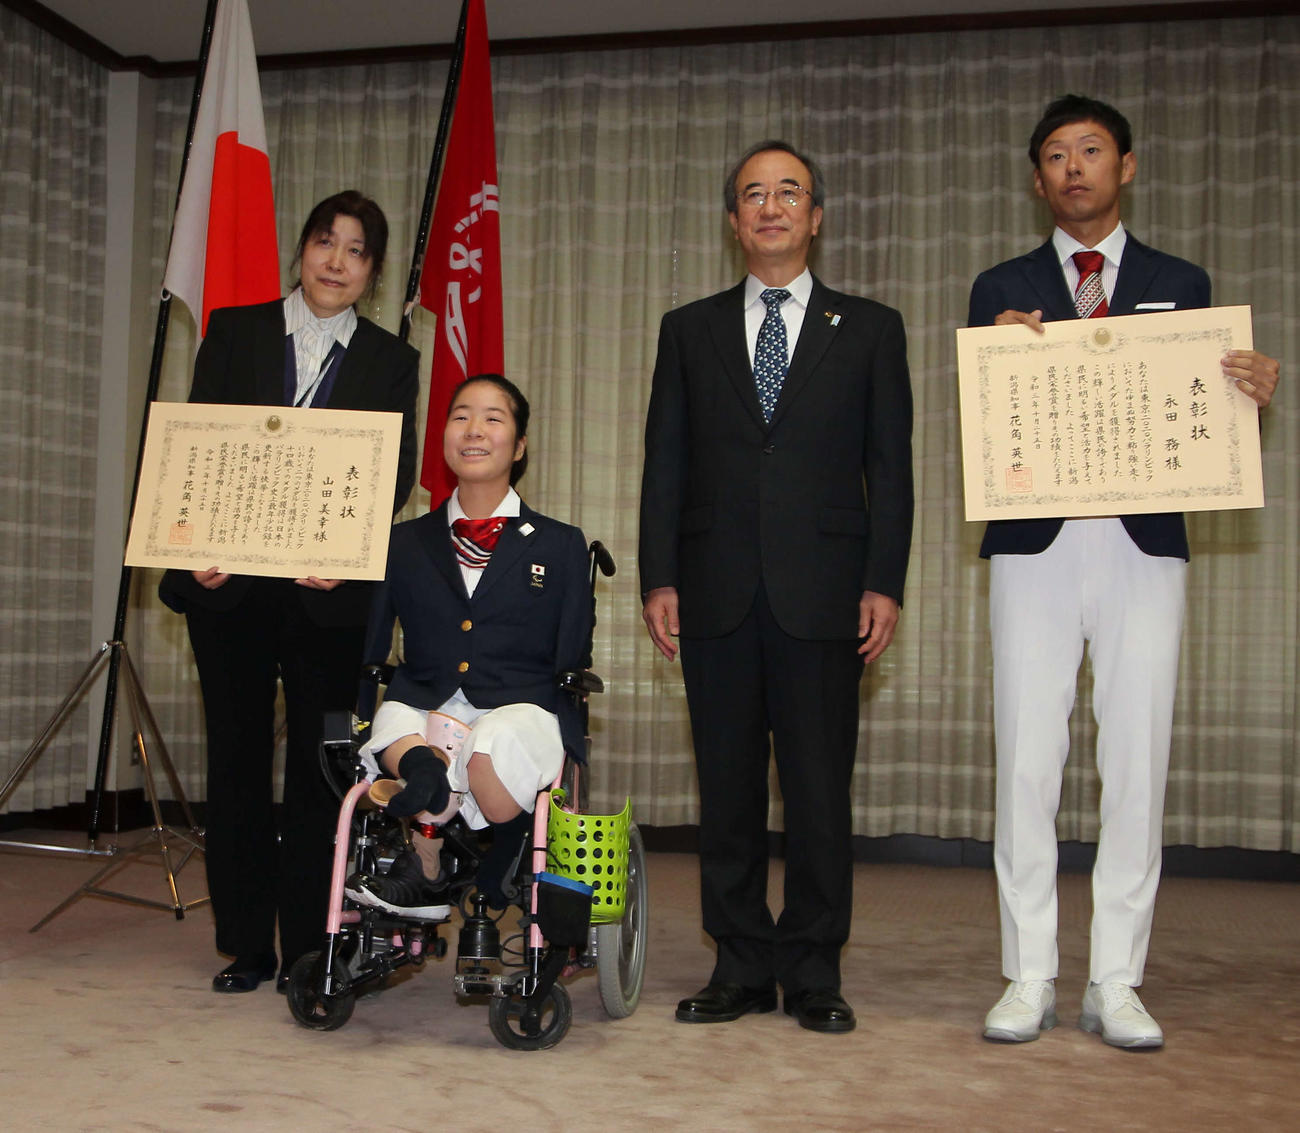 新潟県民栄誉賞を受賞した山田（左から2人目）と永田（右端）。左から3人目は花角英世新潟県知事